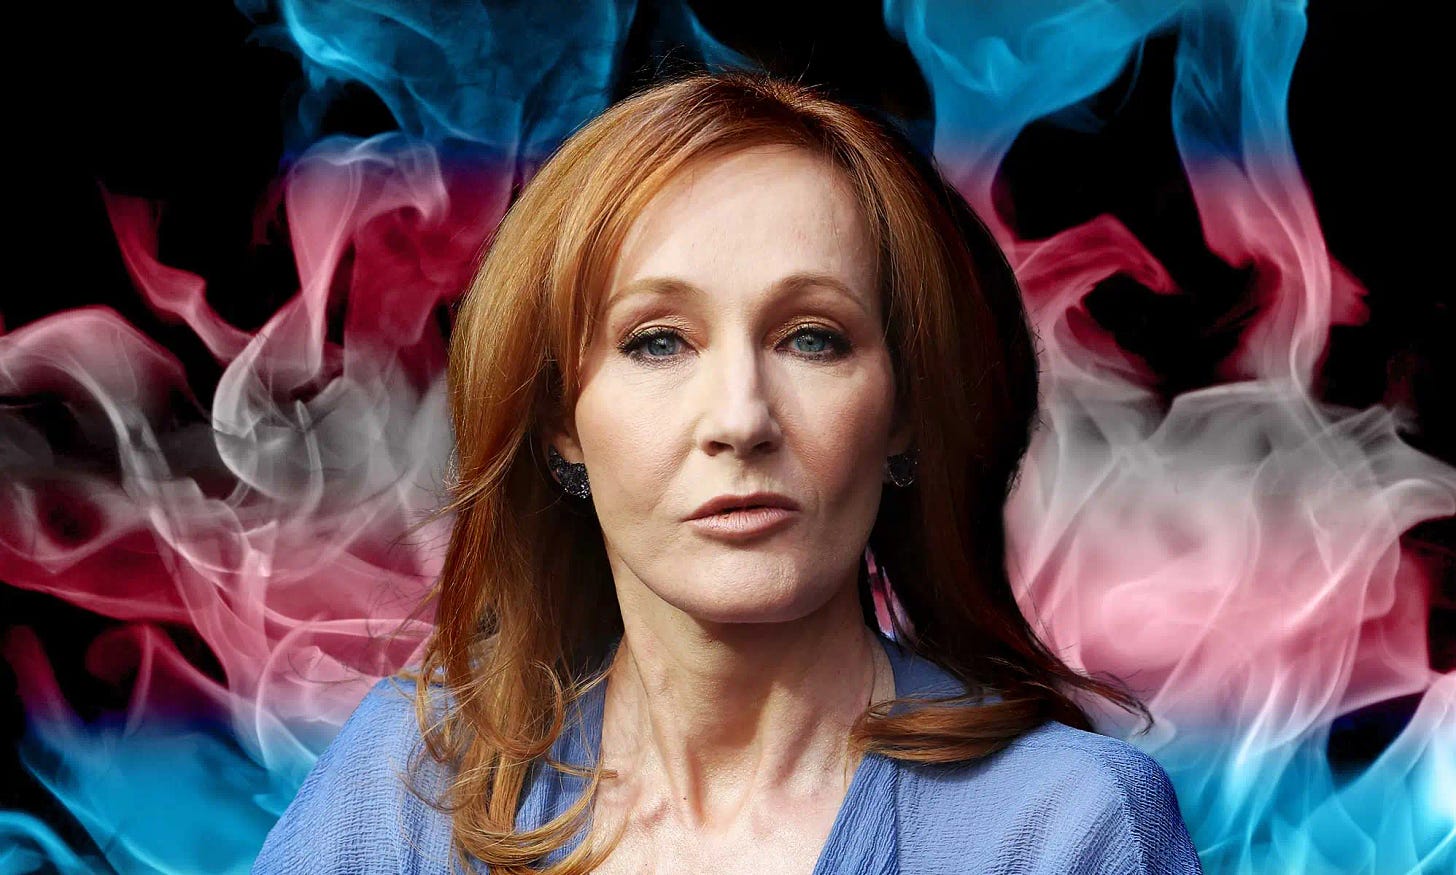 Jk Rowling on ollut jatkuvasti naisvihaisten ja fasististen radikaalien trans-aktivistien hyökkäyksen kohteena naisten ja lasten oikeuksien puolustamisesta. Nähtävästi miljonäärien ei kuulu auttaa heikompia.